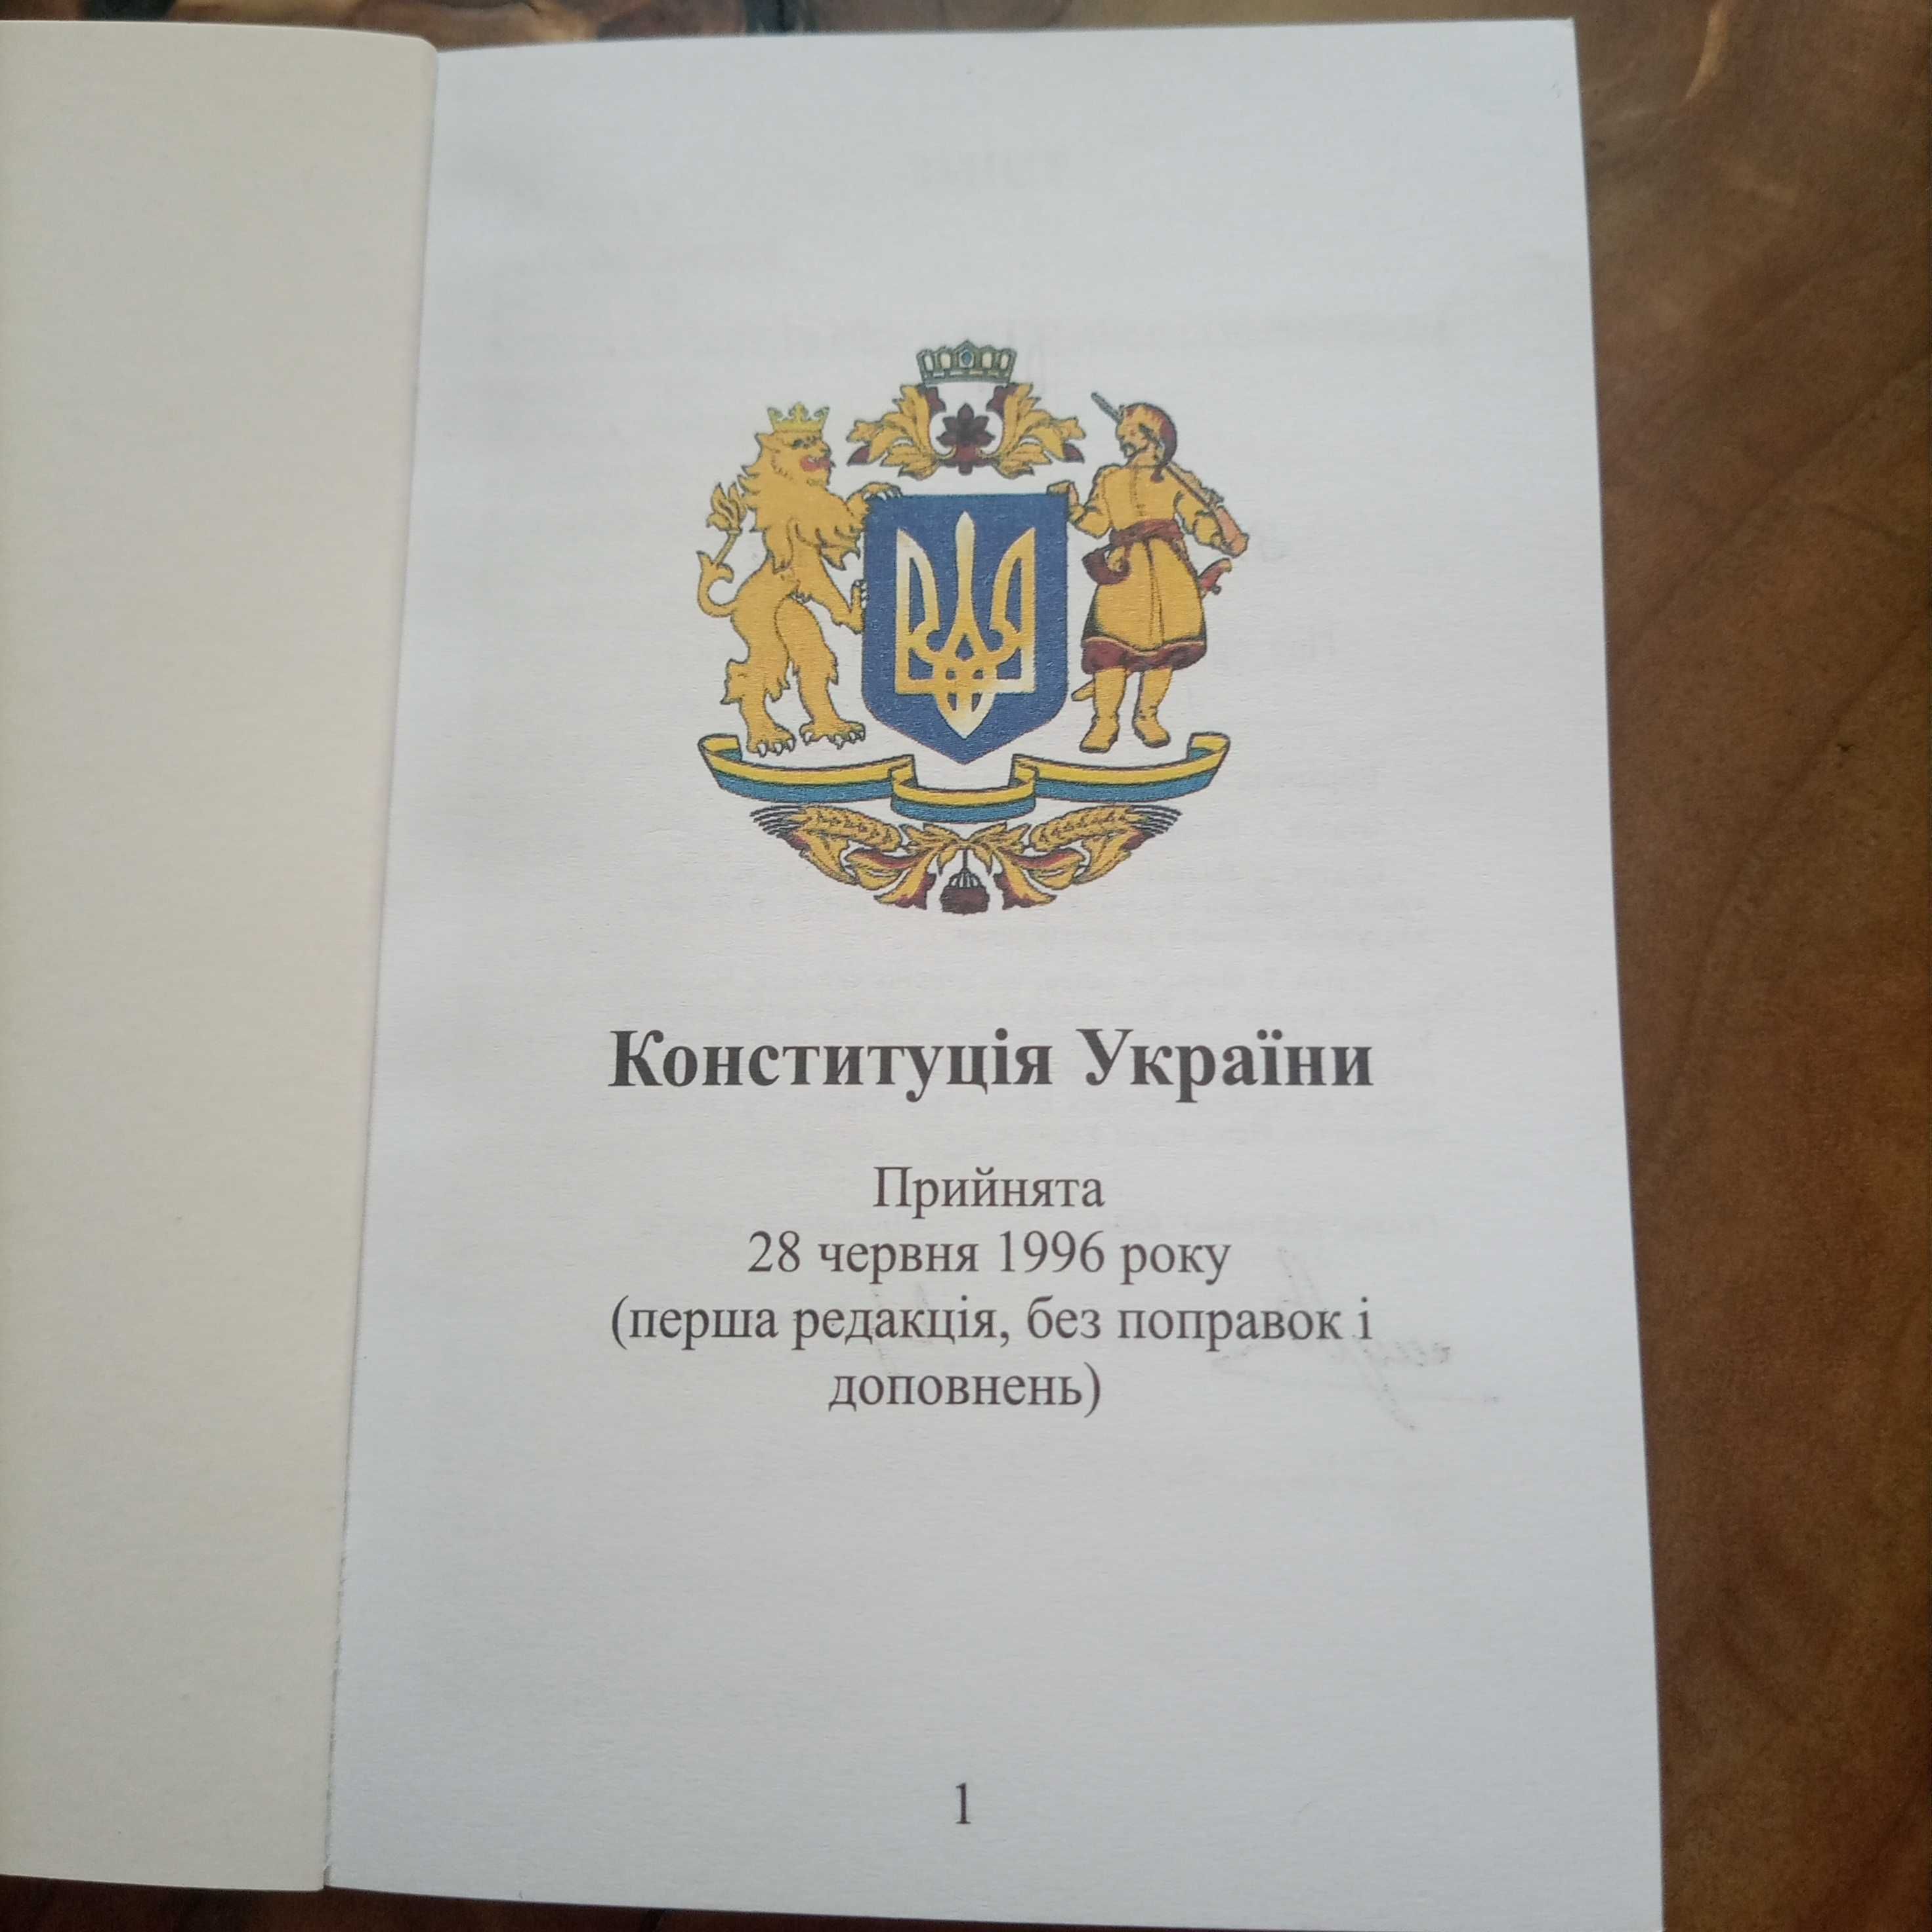 Конституція України 1996року, перша редакція, без поправок тадоповнень